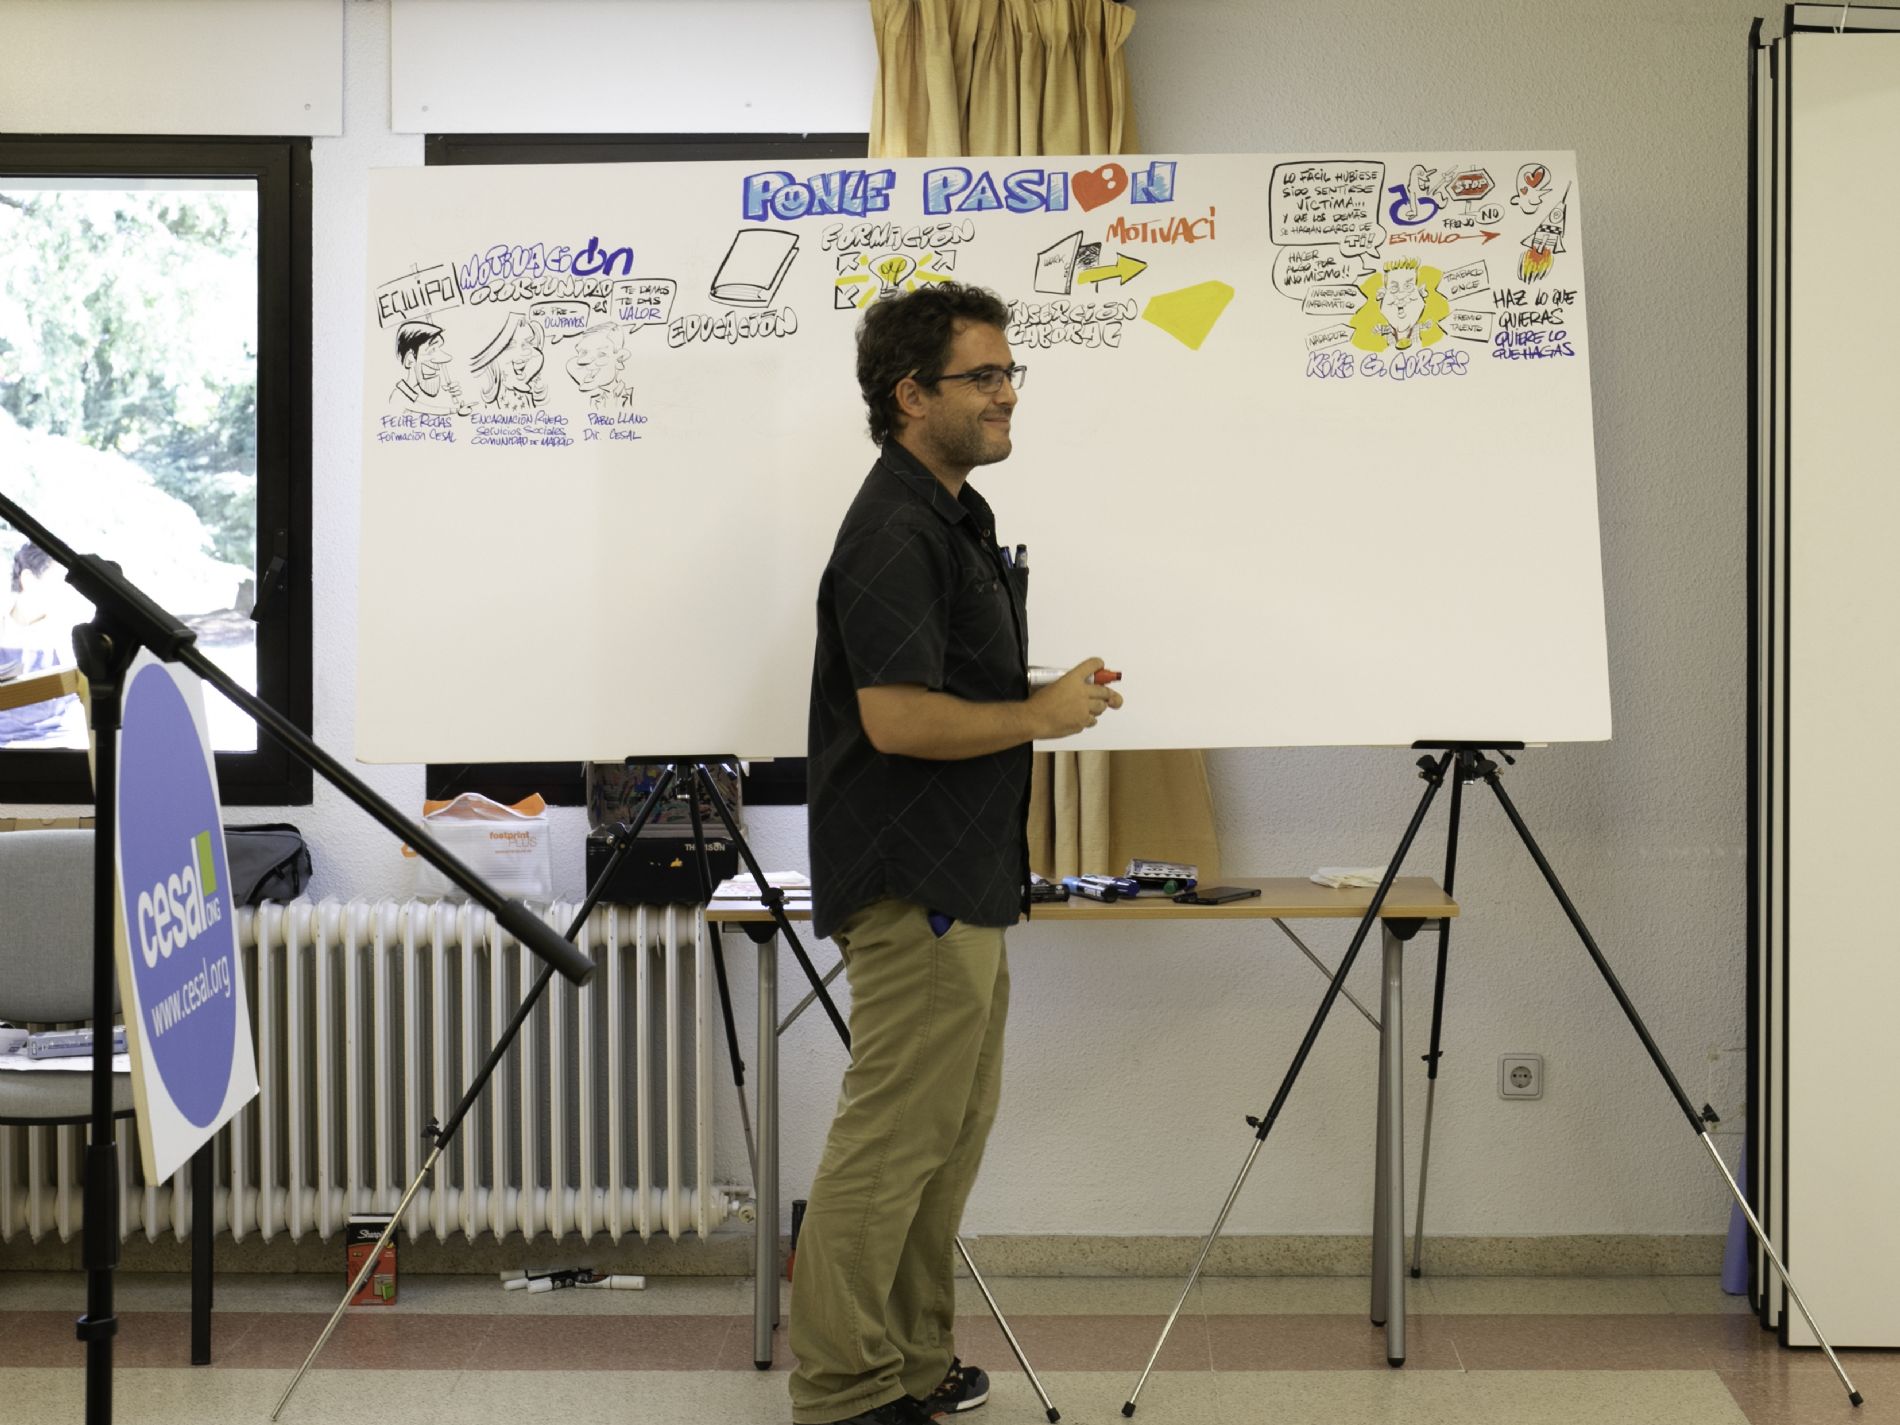 Rafael Leafar, caricaturas para eventos, realizando un visual thinking sobre `Ponle pasión`, el evento de inicio de curso de la formación no reglada de CESAL en Madrid